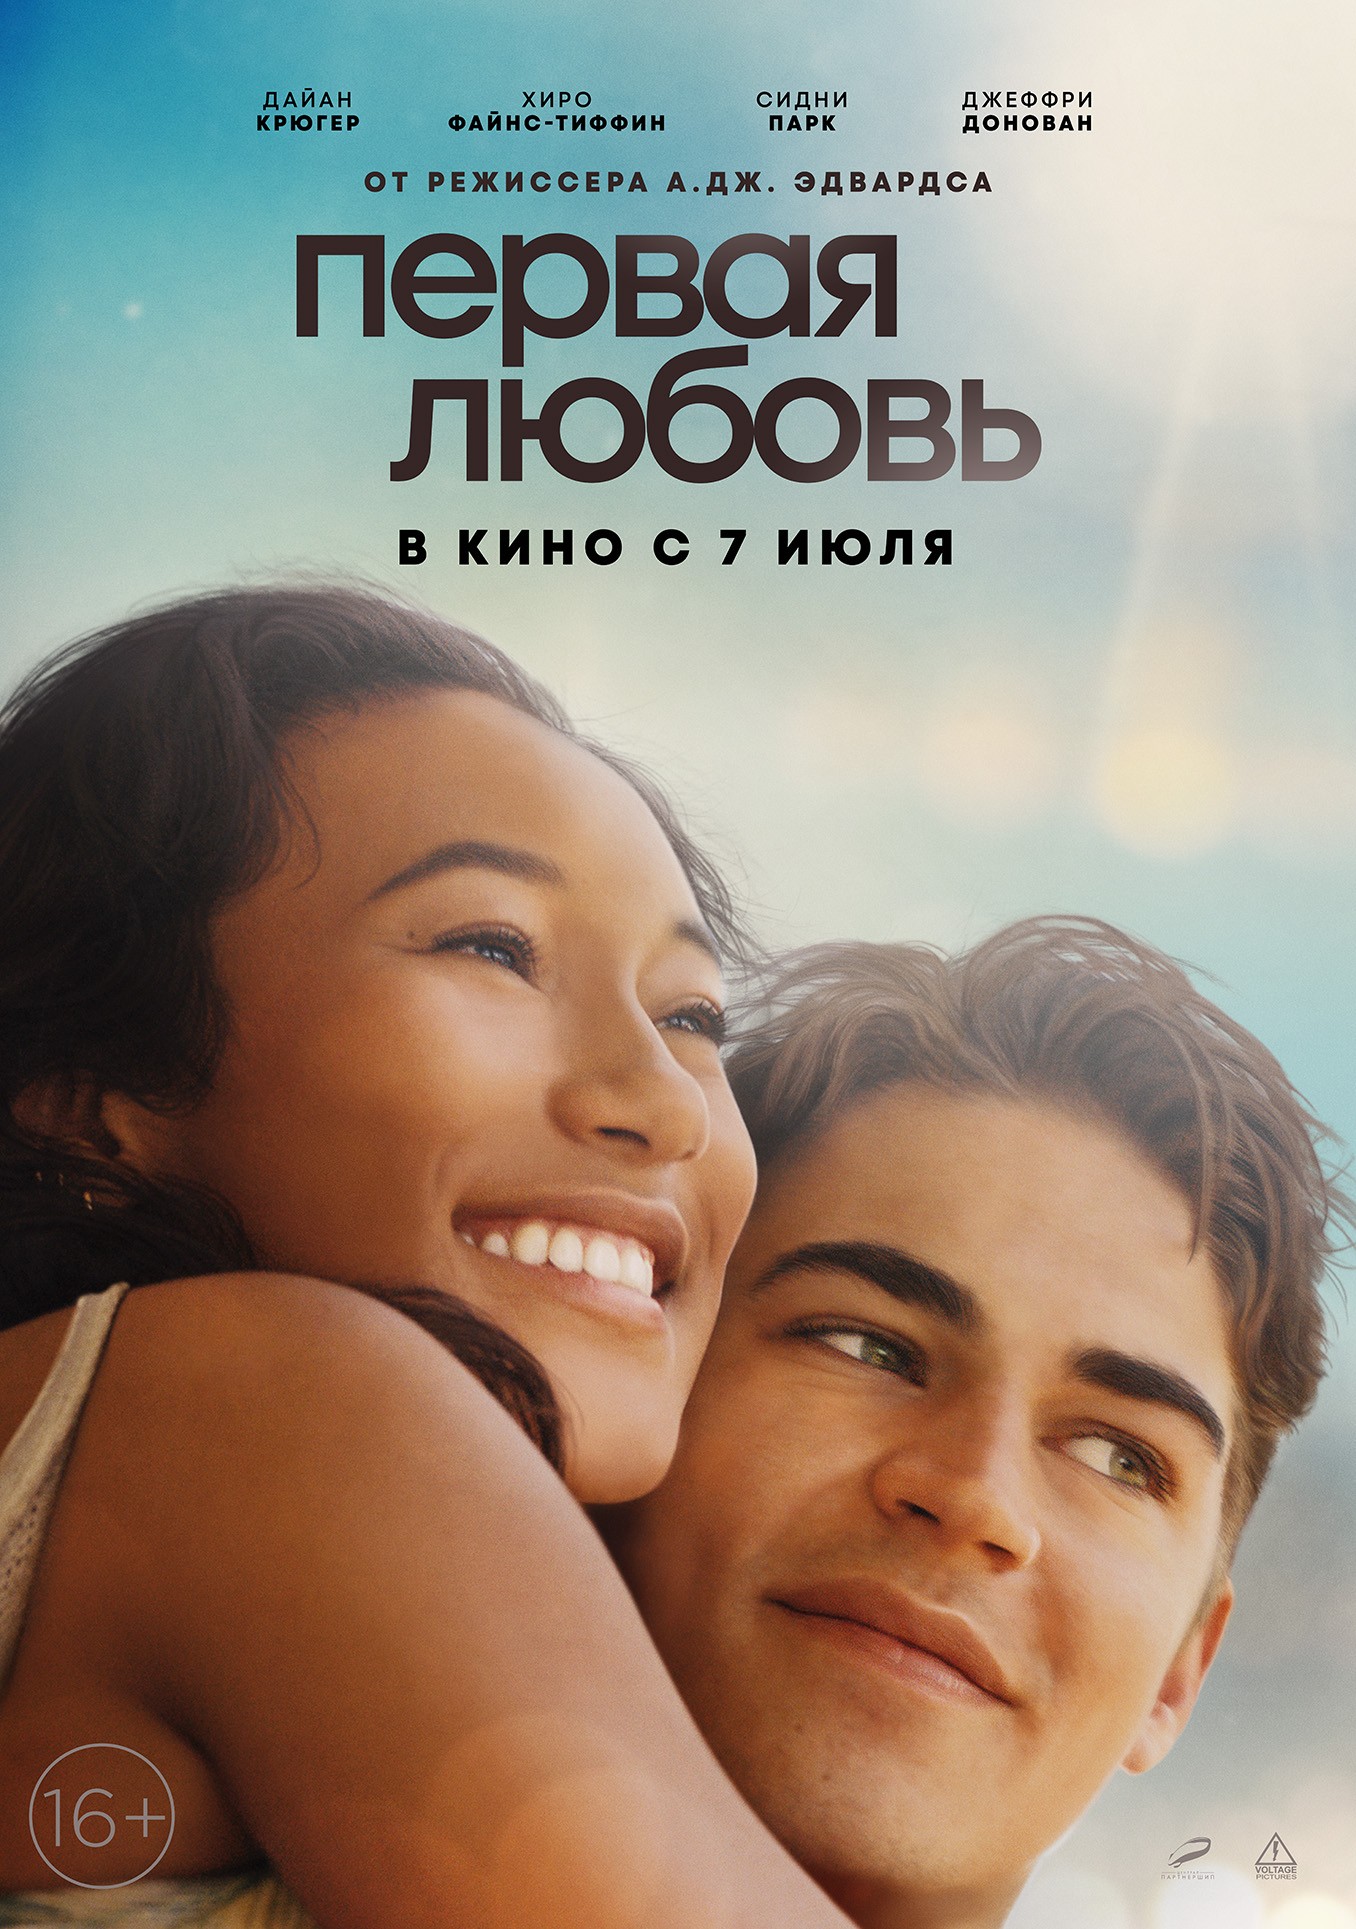 Первая любовь: постер N201521